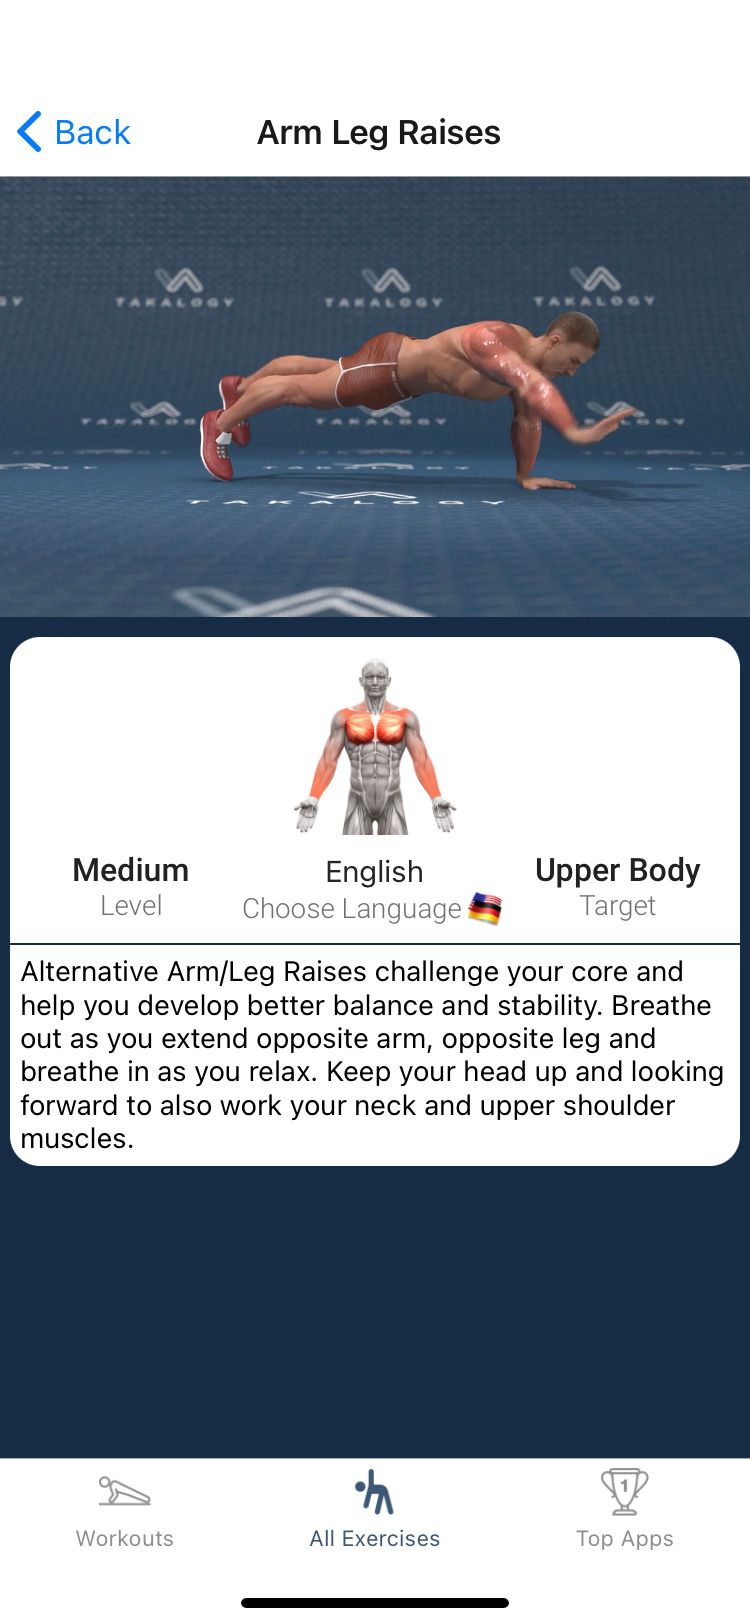 Back and Shoulder Workout app arm leg raises